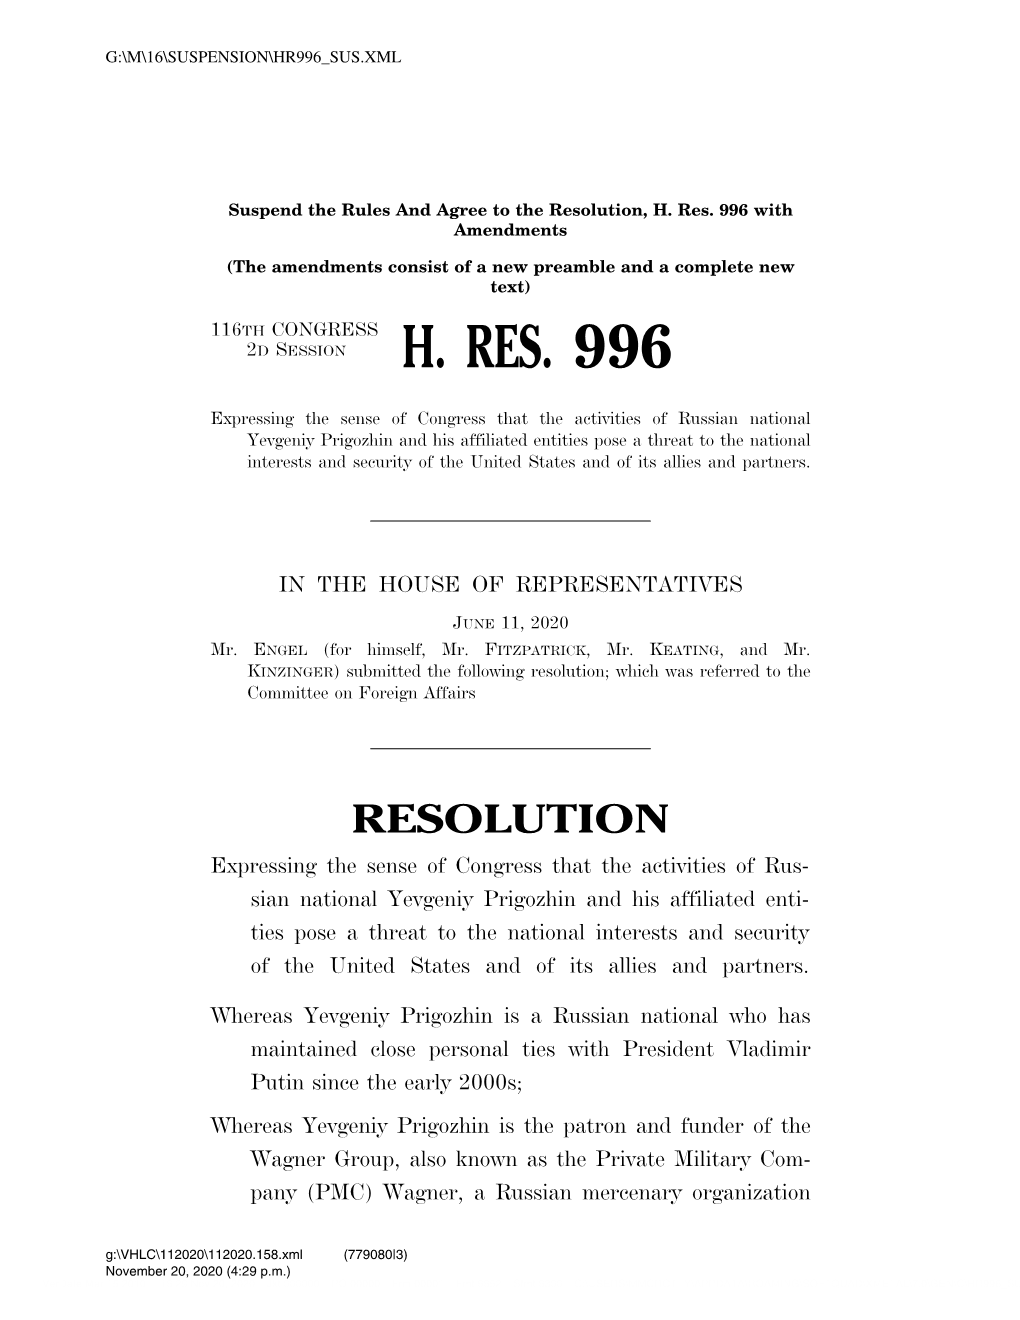 H. Res. 996 with Amendments